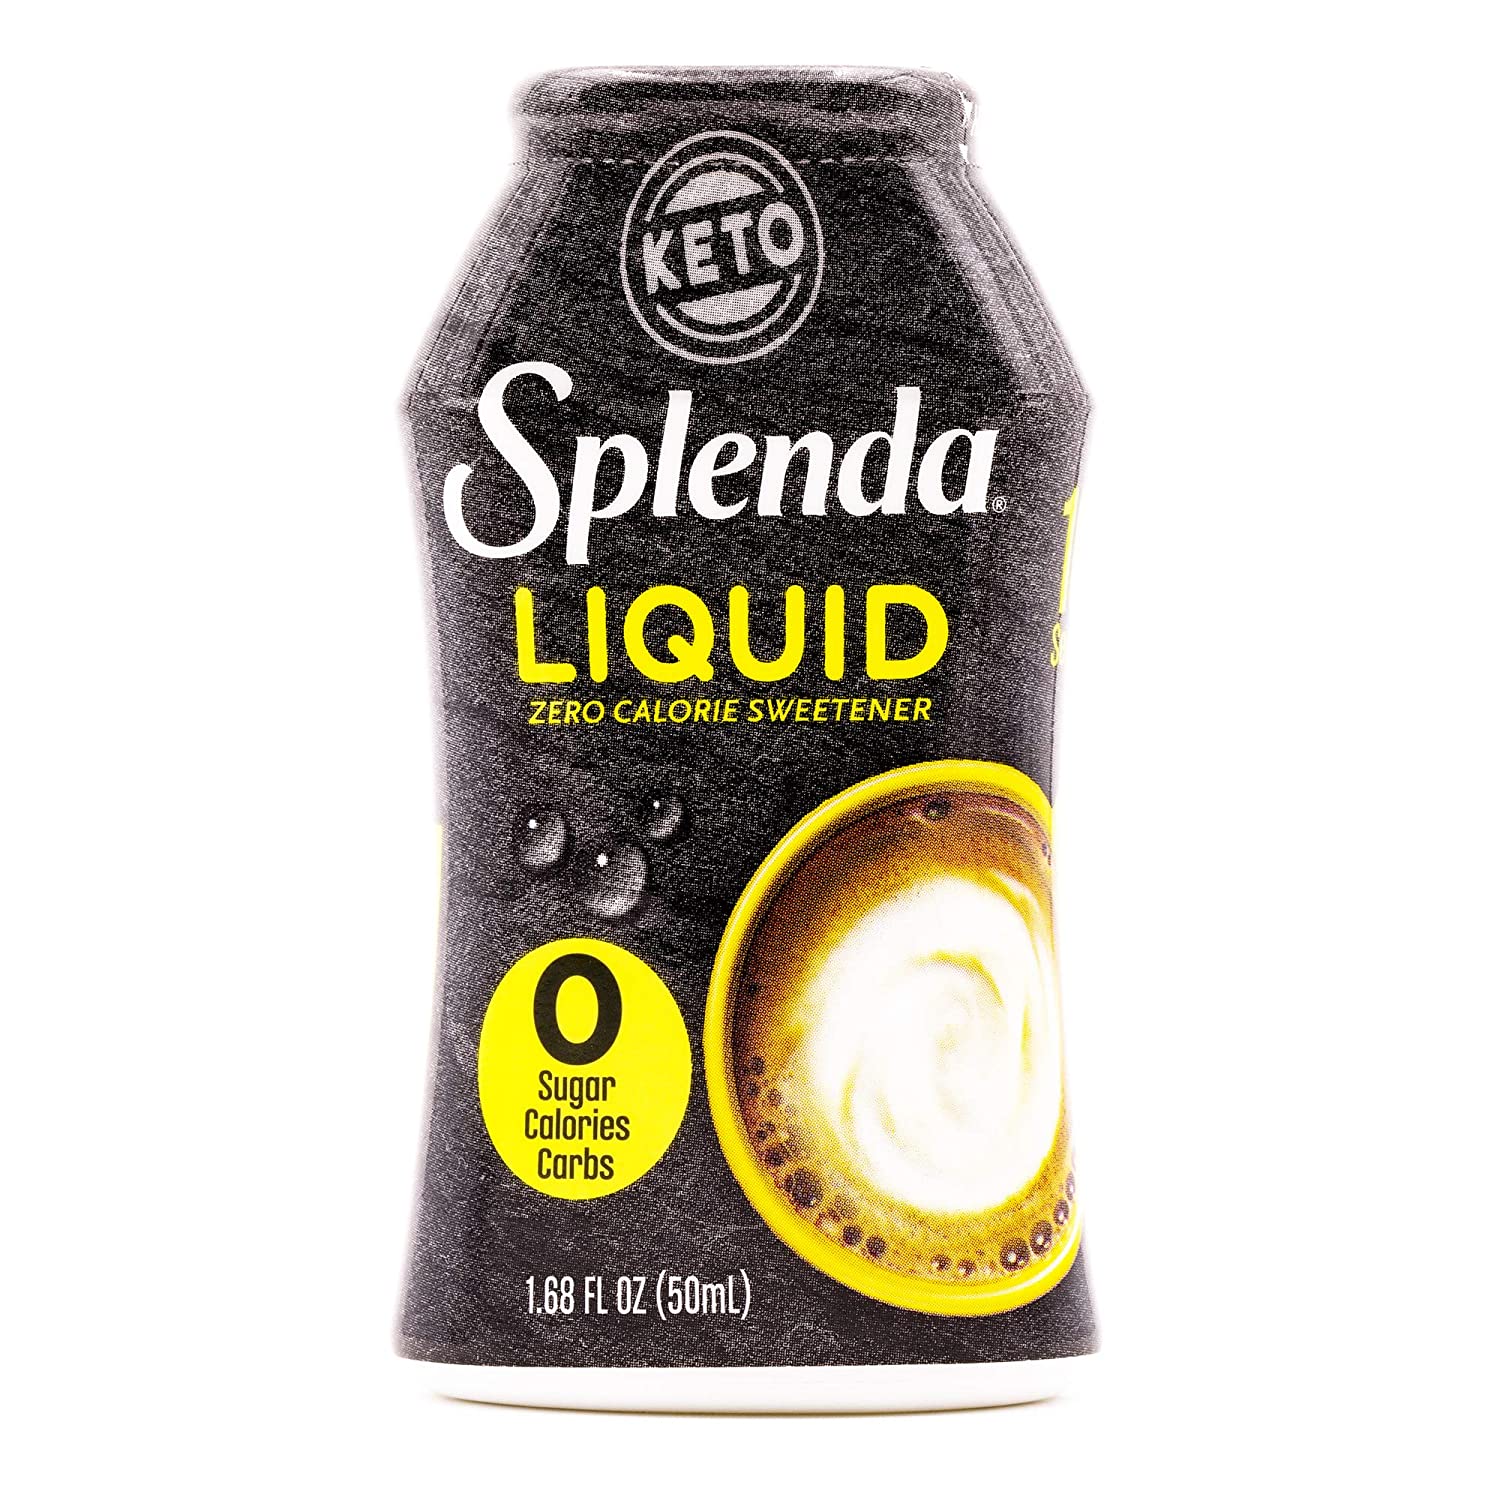 SPLENDA LIQUID Zero Calorie Sweetener drops